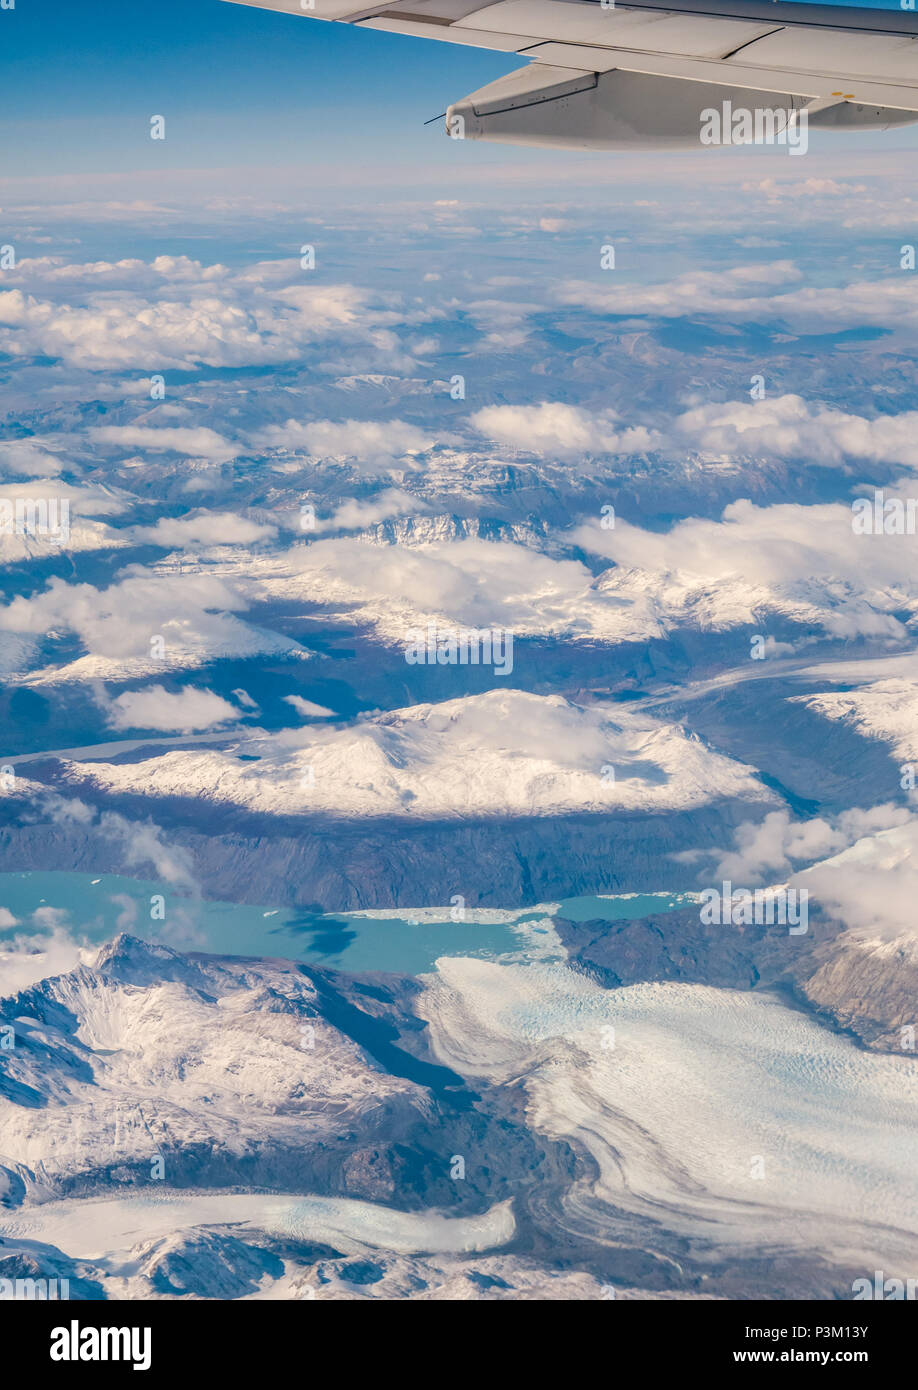 Vue depuis la fenêtre de l'avion de la neige a couvert des Andes avec les lacs, les glaciers et icebergs, le sud du champ de glace de Patagonie Patagonie, au Chili Banque D'Images